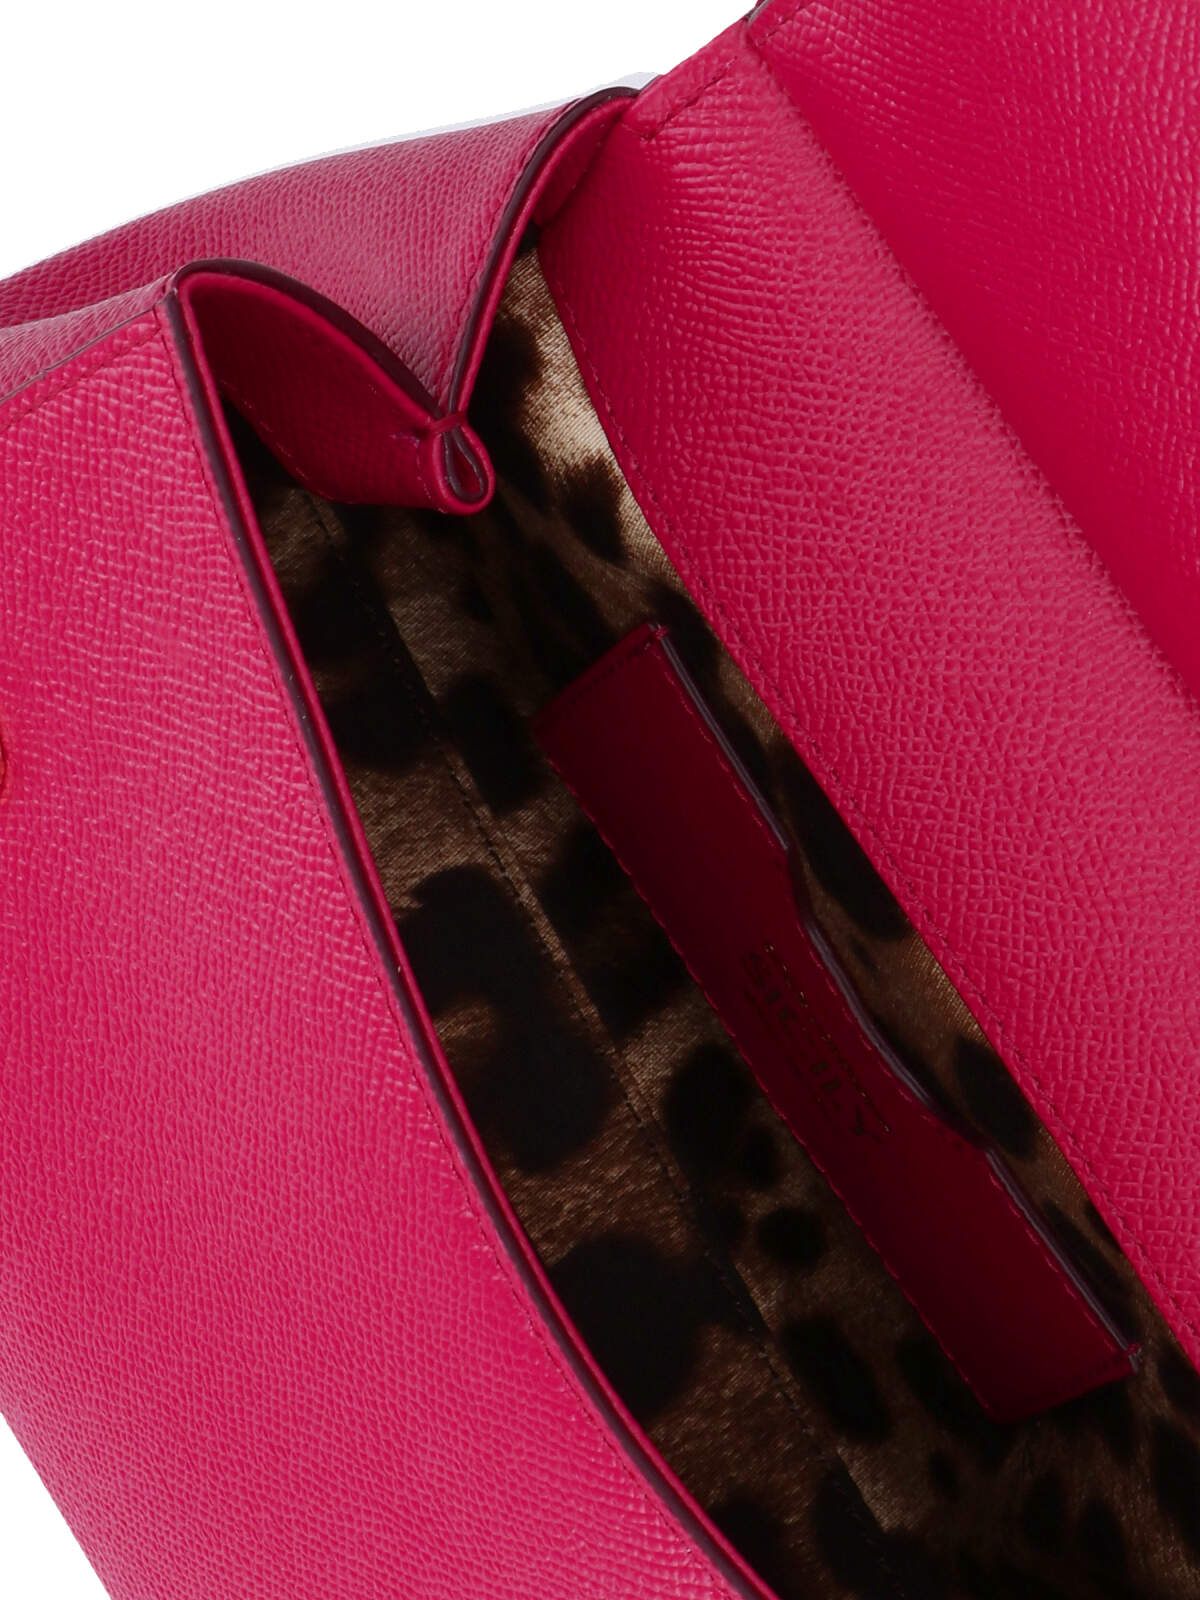 Shop Dolce & Gabbana Medium Handbag Sicily In Pink